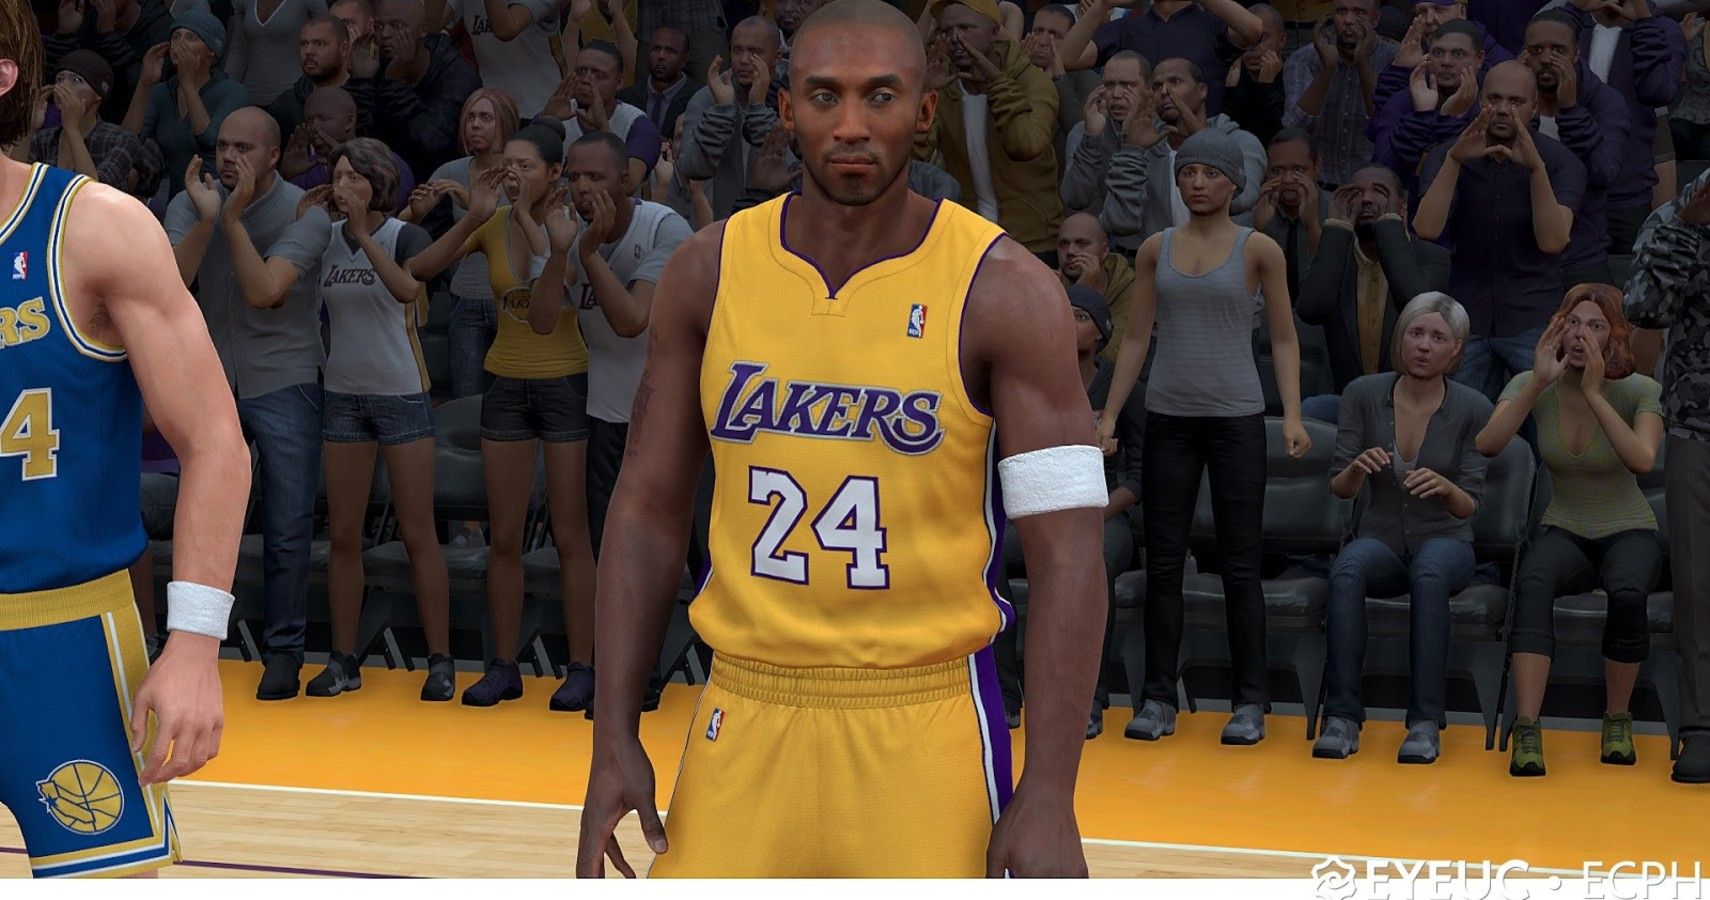 NBA 2K20 Adds Kobe Bryant 'KB' Jersey Patch - Operation Sports